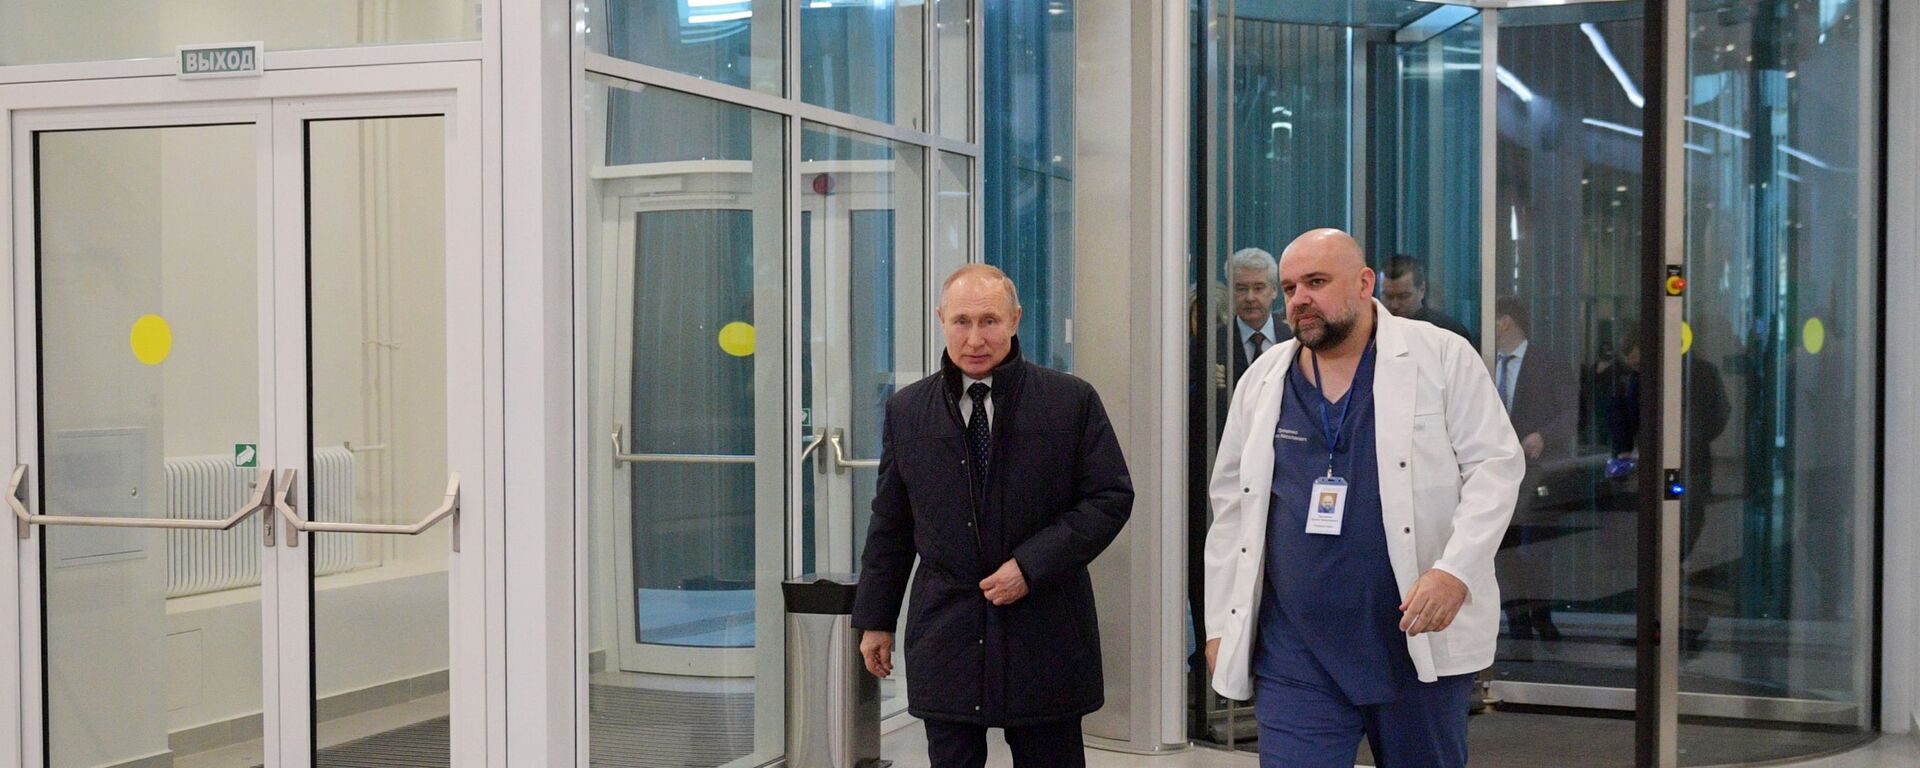 Посета председника Русије Владимира Путина болници у којој се налазе пацијенти заражени вирусом корона - Sputnik Србија, 1920, 28.10.2021